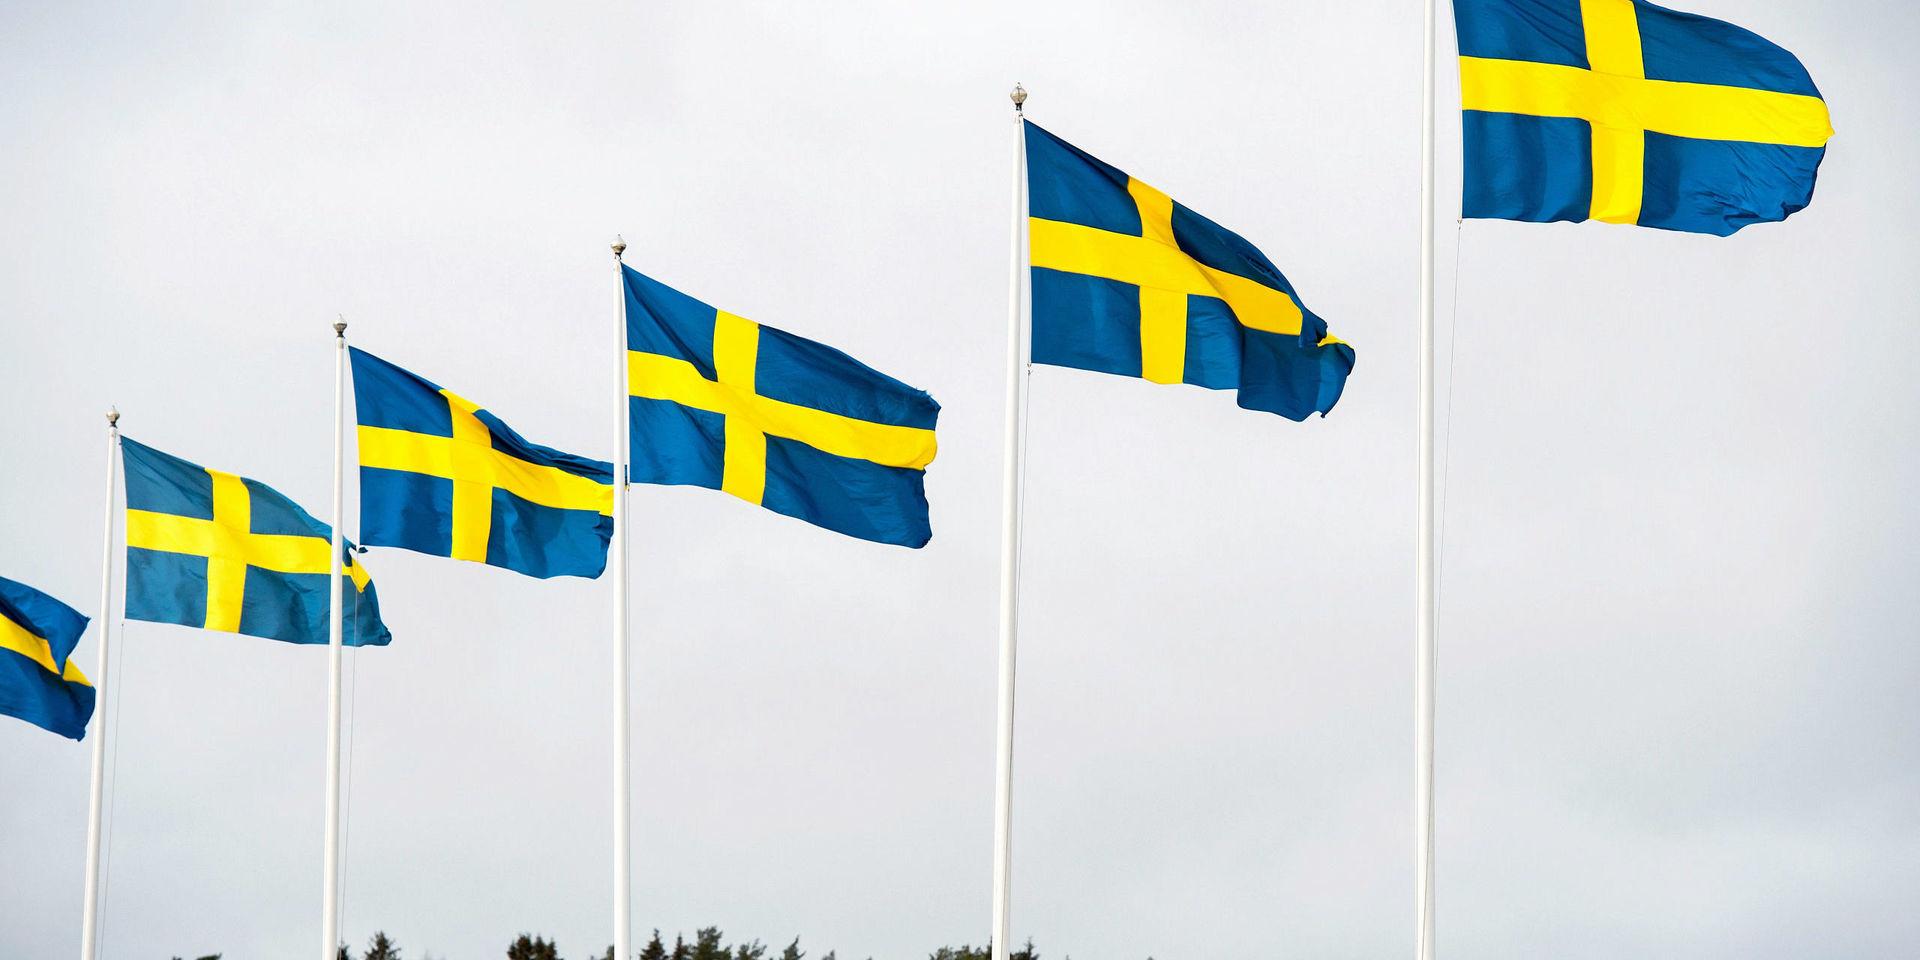 Den åttonde mars vajar flaggorna högt på Trollhättans stänger för det tionde året i rad, tack vare den motion som Vänsterpartiet fick igenom 2009, uttrycker debattörerna.